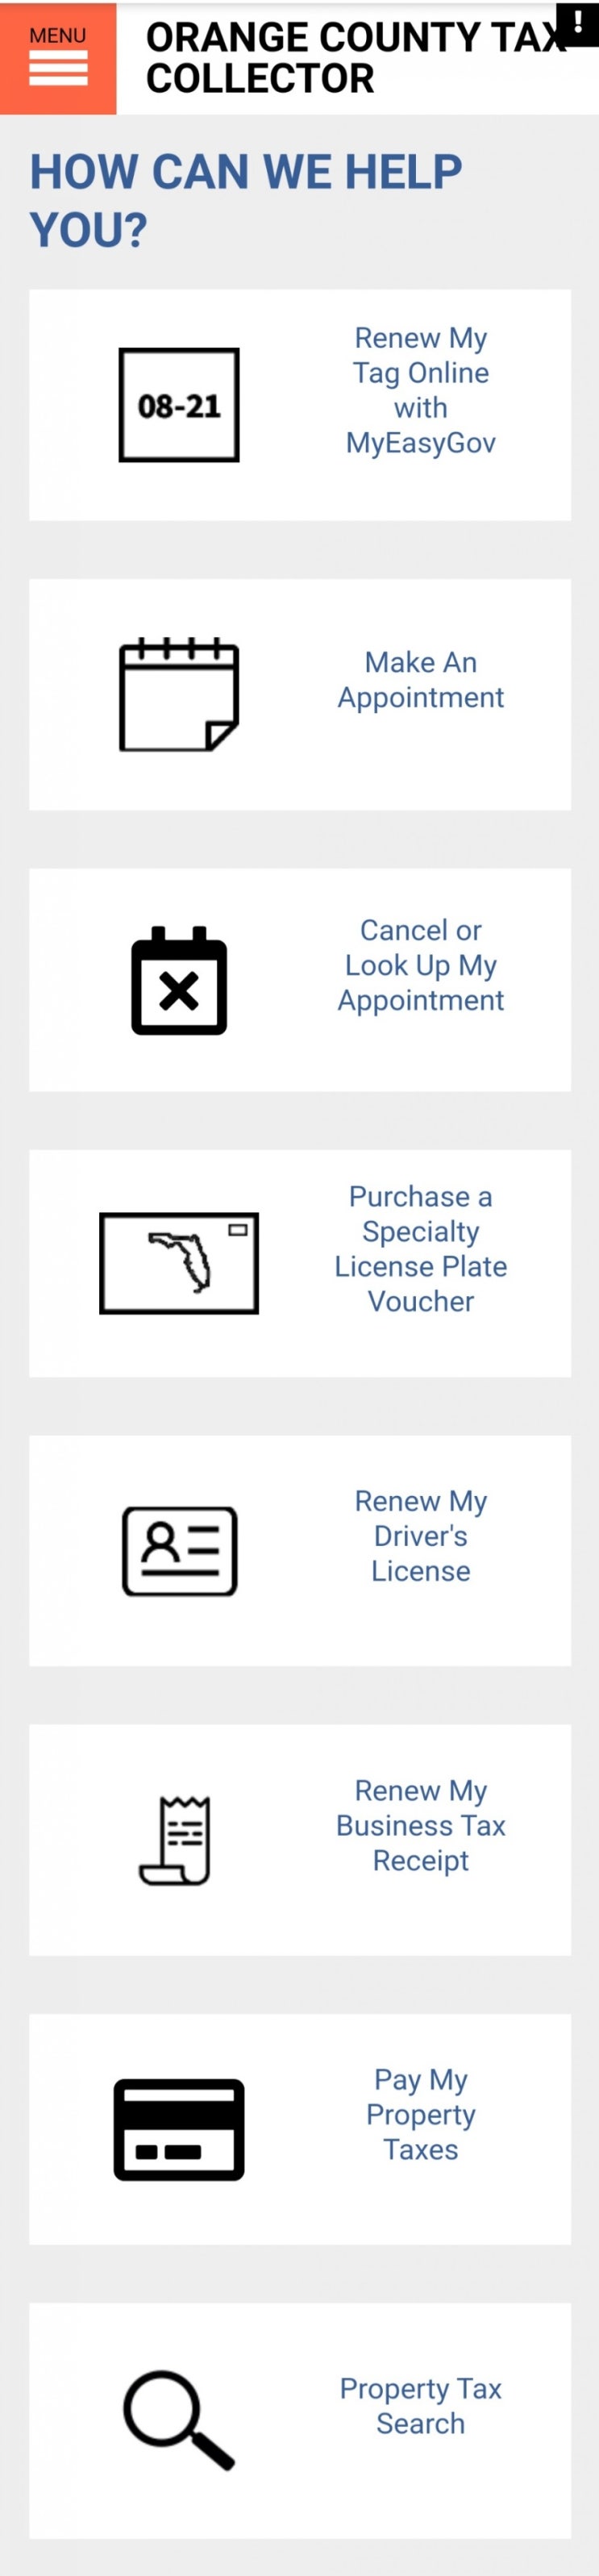 #3. 미국에서 운전면허 갱신하기 : DMV 예약하기/운전면허증 주소변경 하기/F-1 비자 준비서류/플로리다 주 기준 : 네이버 블로그